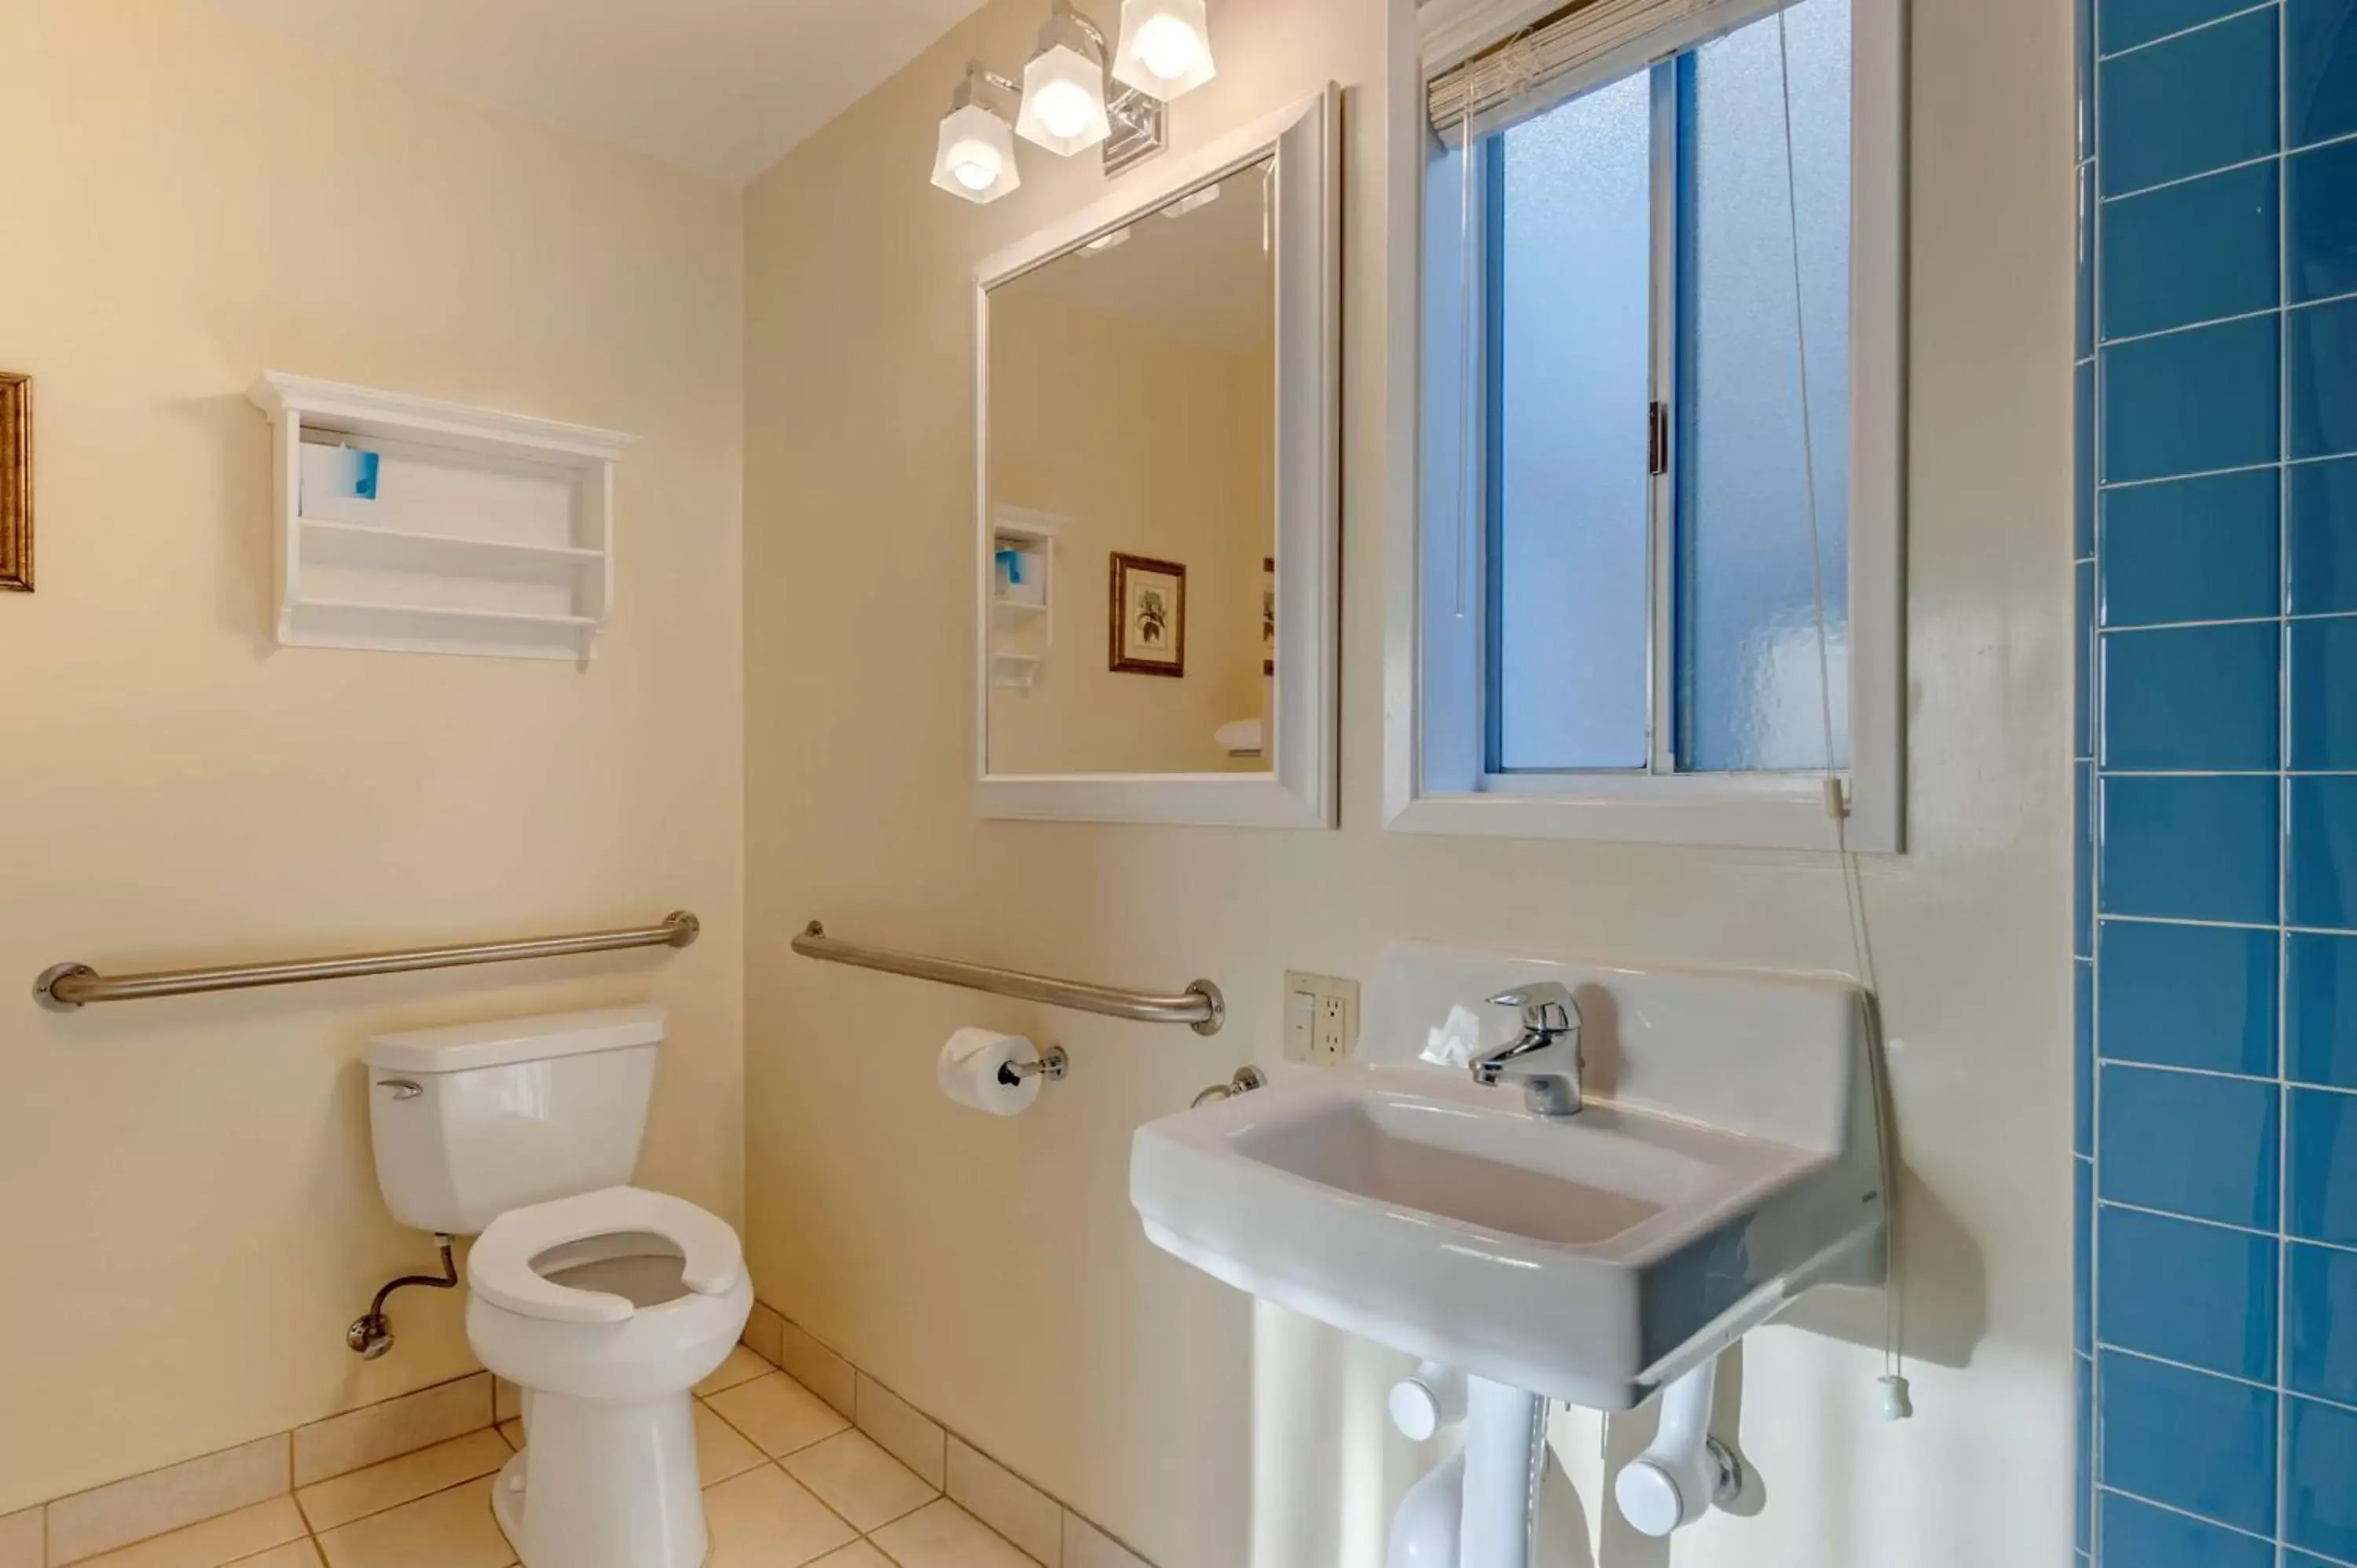 Bedroom, Bathroom in Best Western Plus Santa Barbara